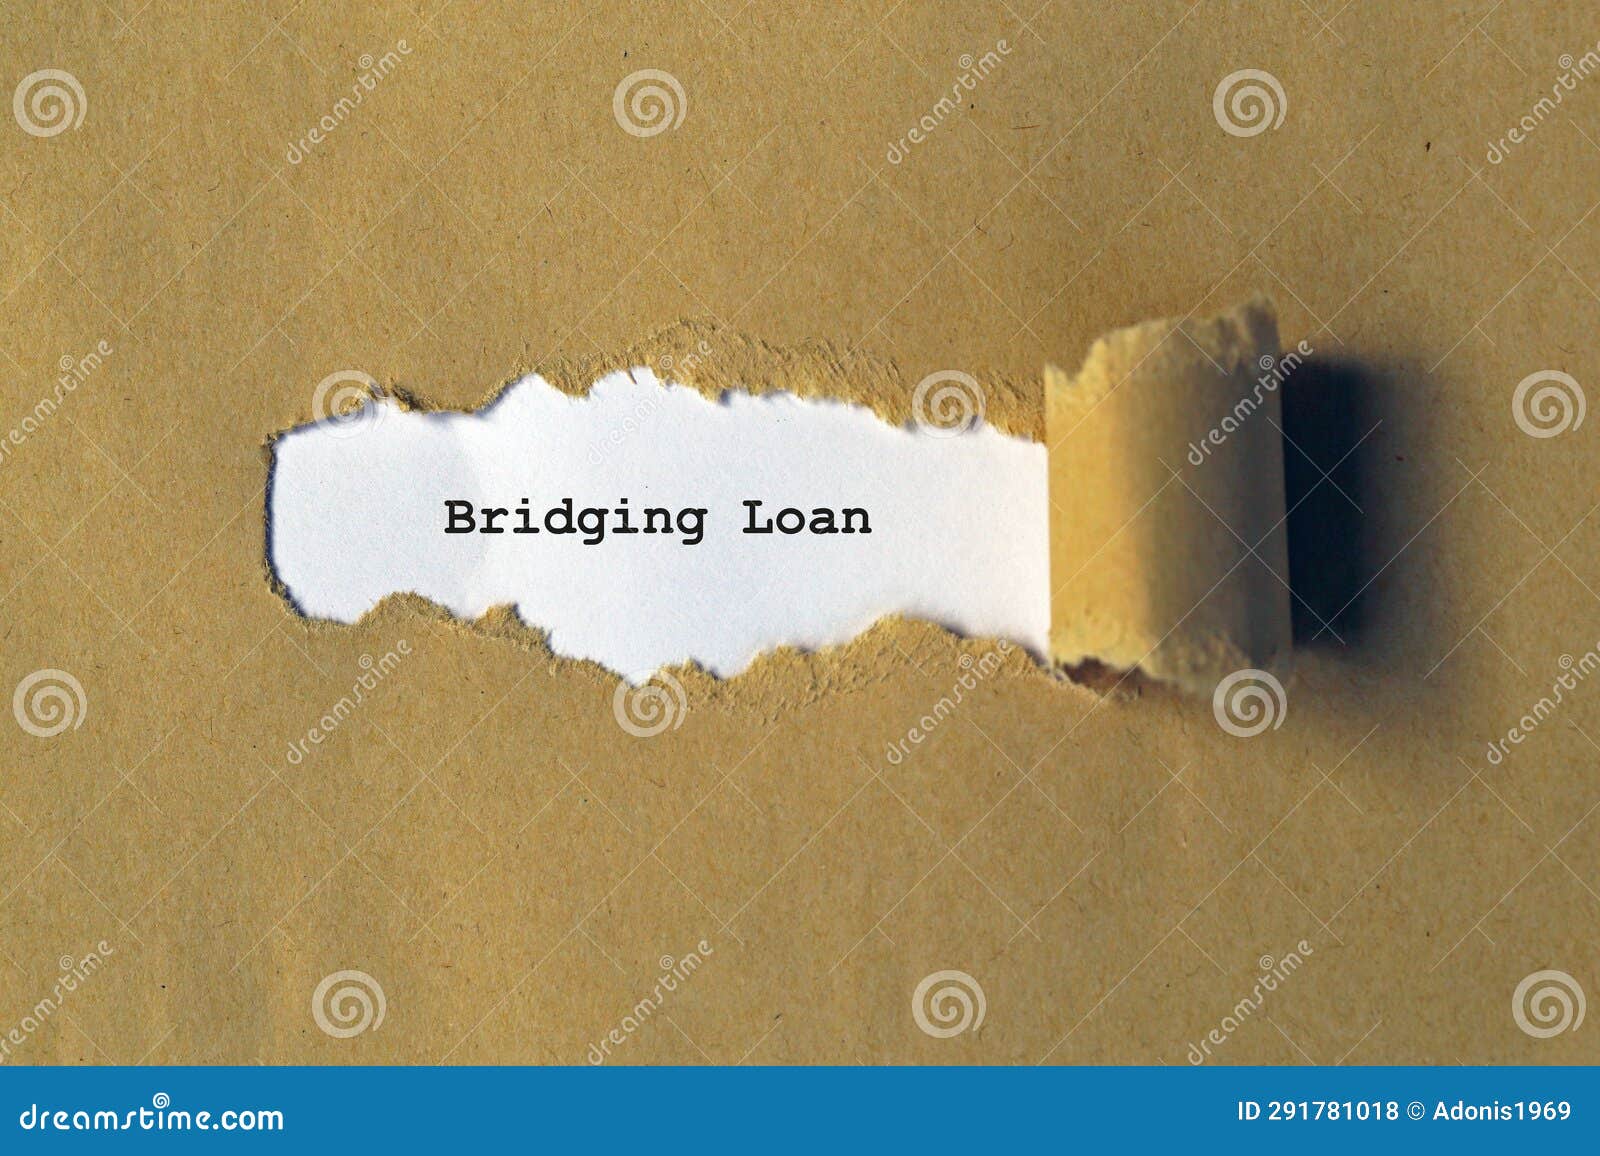 bridging loan on white paper